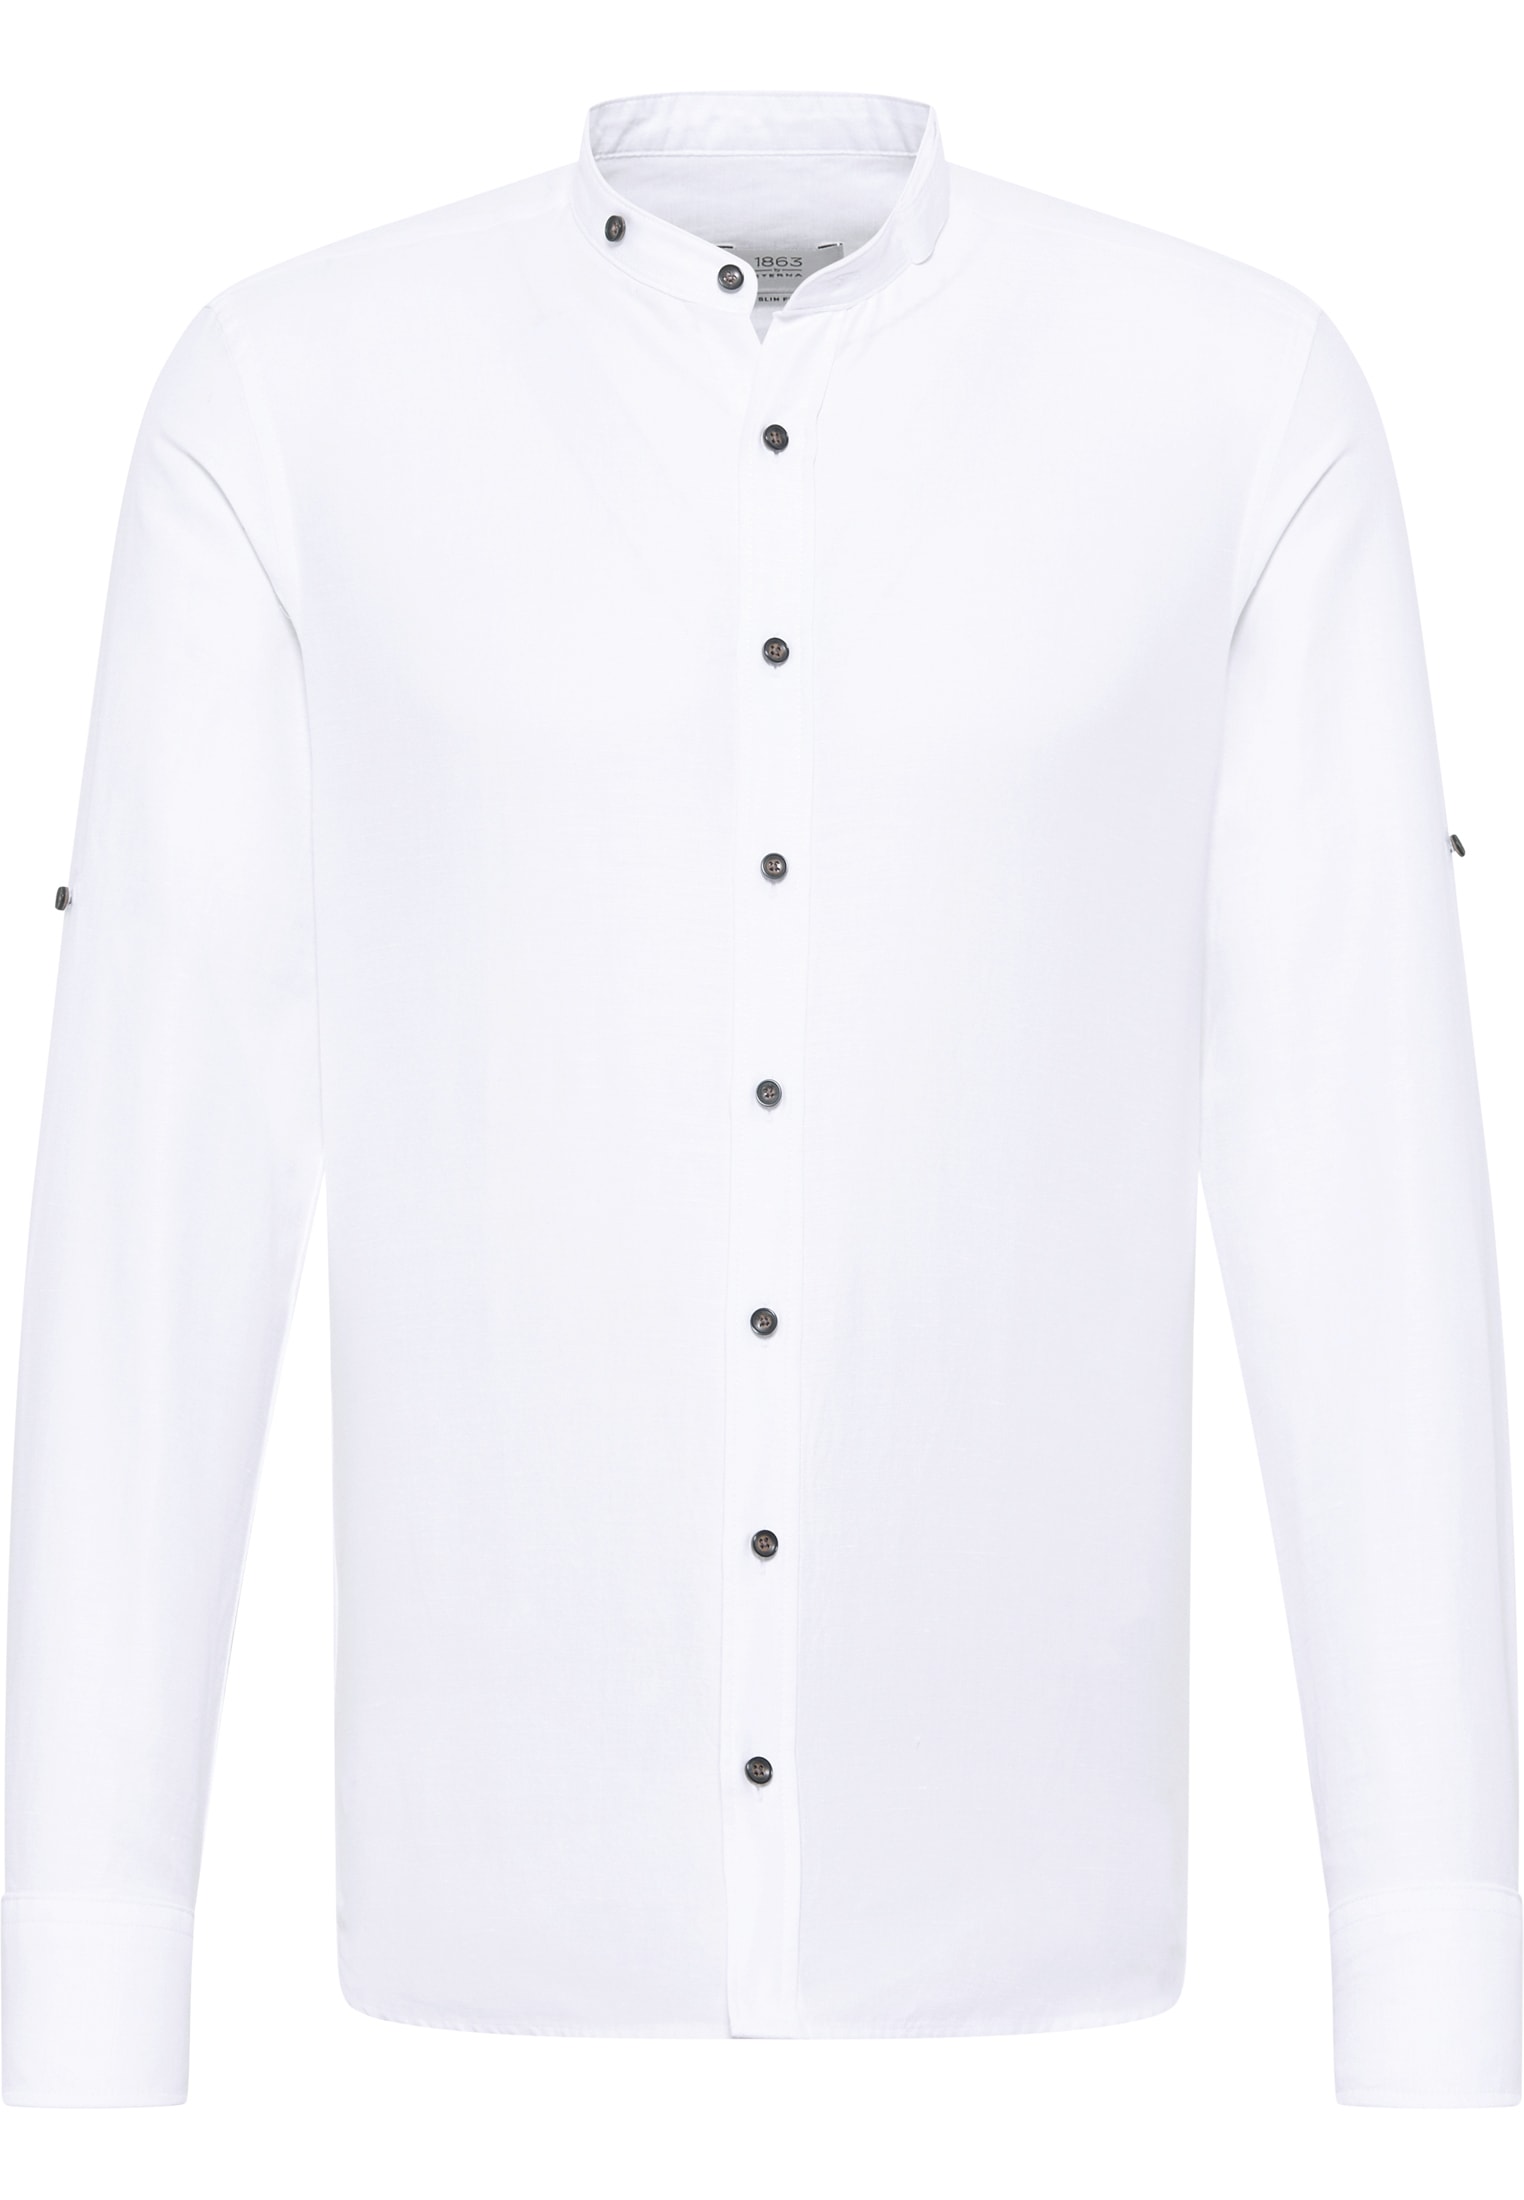 SLIM FIT Linen | | Shirt | | Langarm unifarben in weiß 40 1SH12593-00-01-40-1/1 weiß